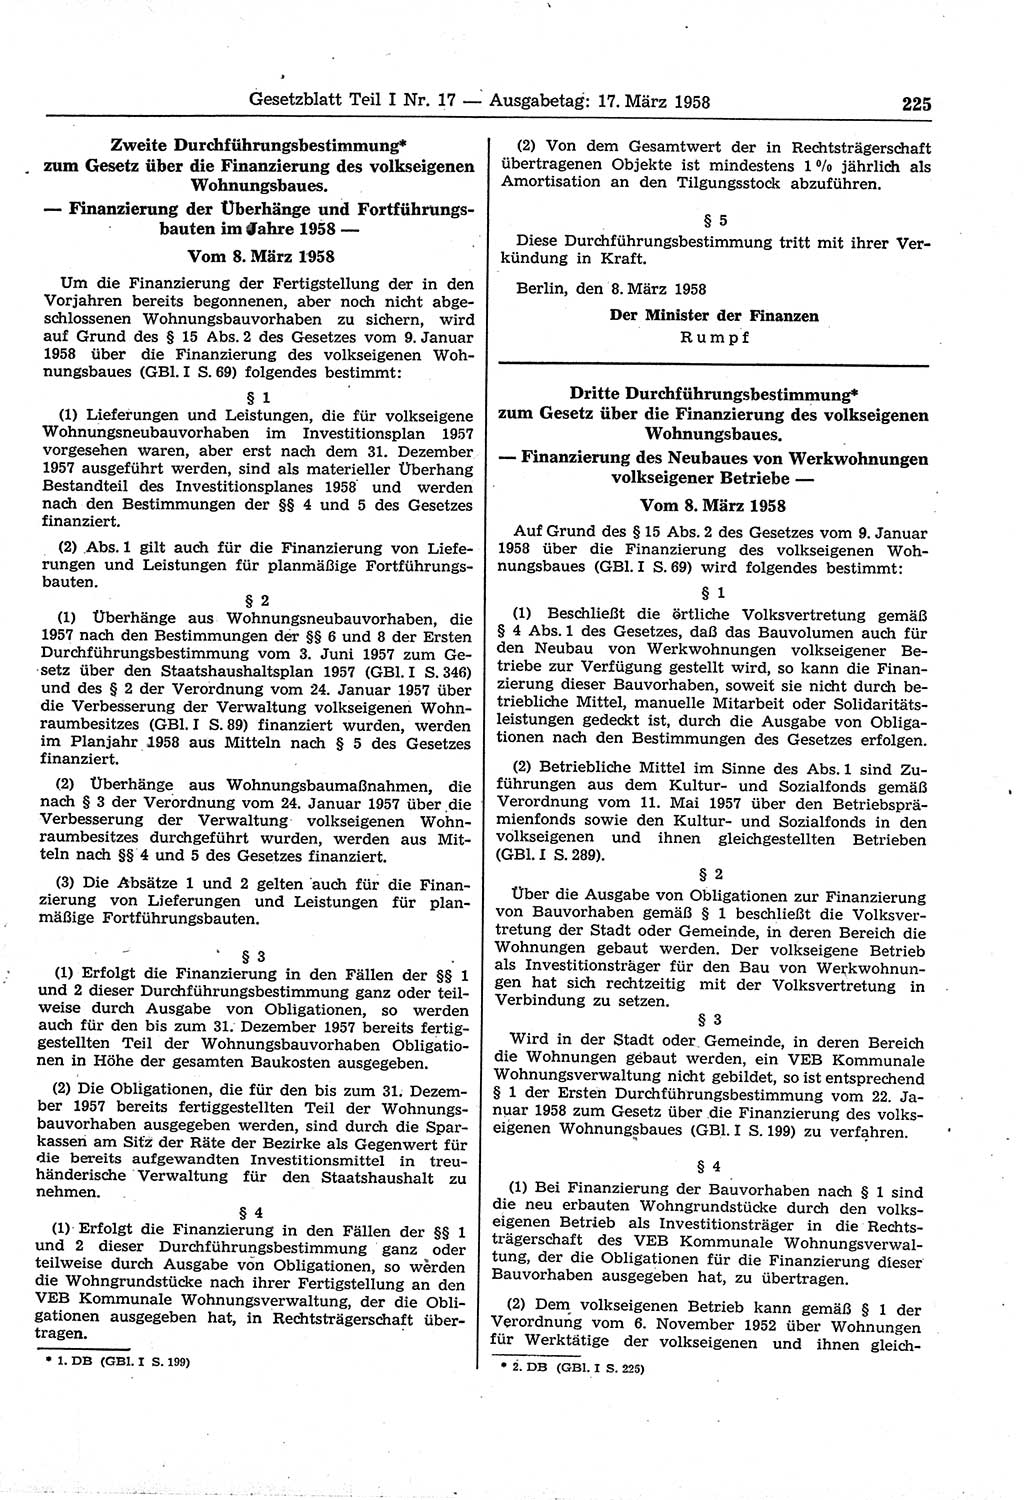 Gesetzblatt (GBl.) der Deutschen Demokratischen Republik (DDR) Teil Ⅰ 1958, Seite 225 (GBl. DDR Ⅰ 1958, S. 225)